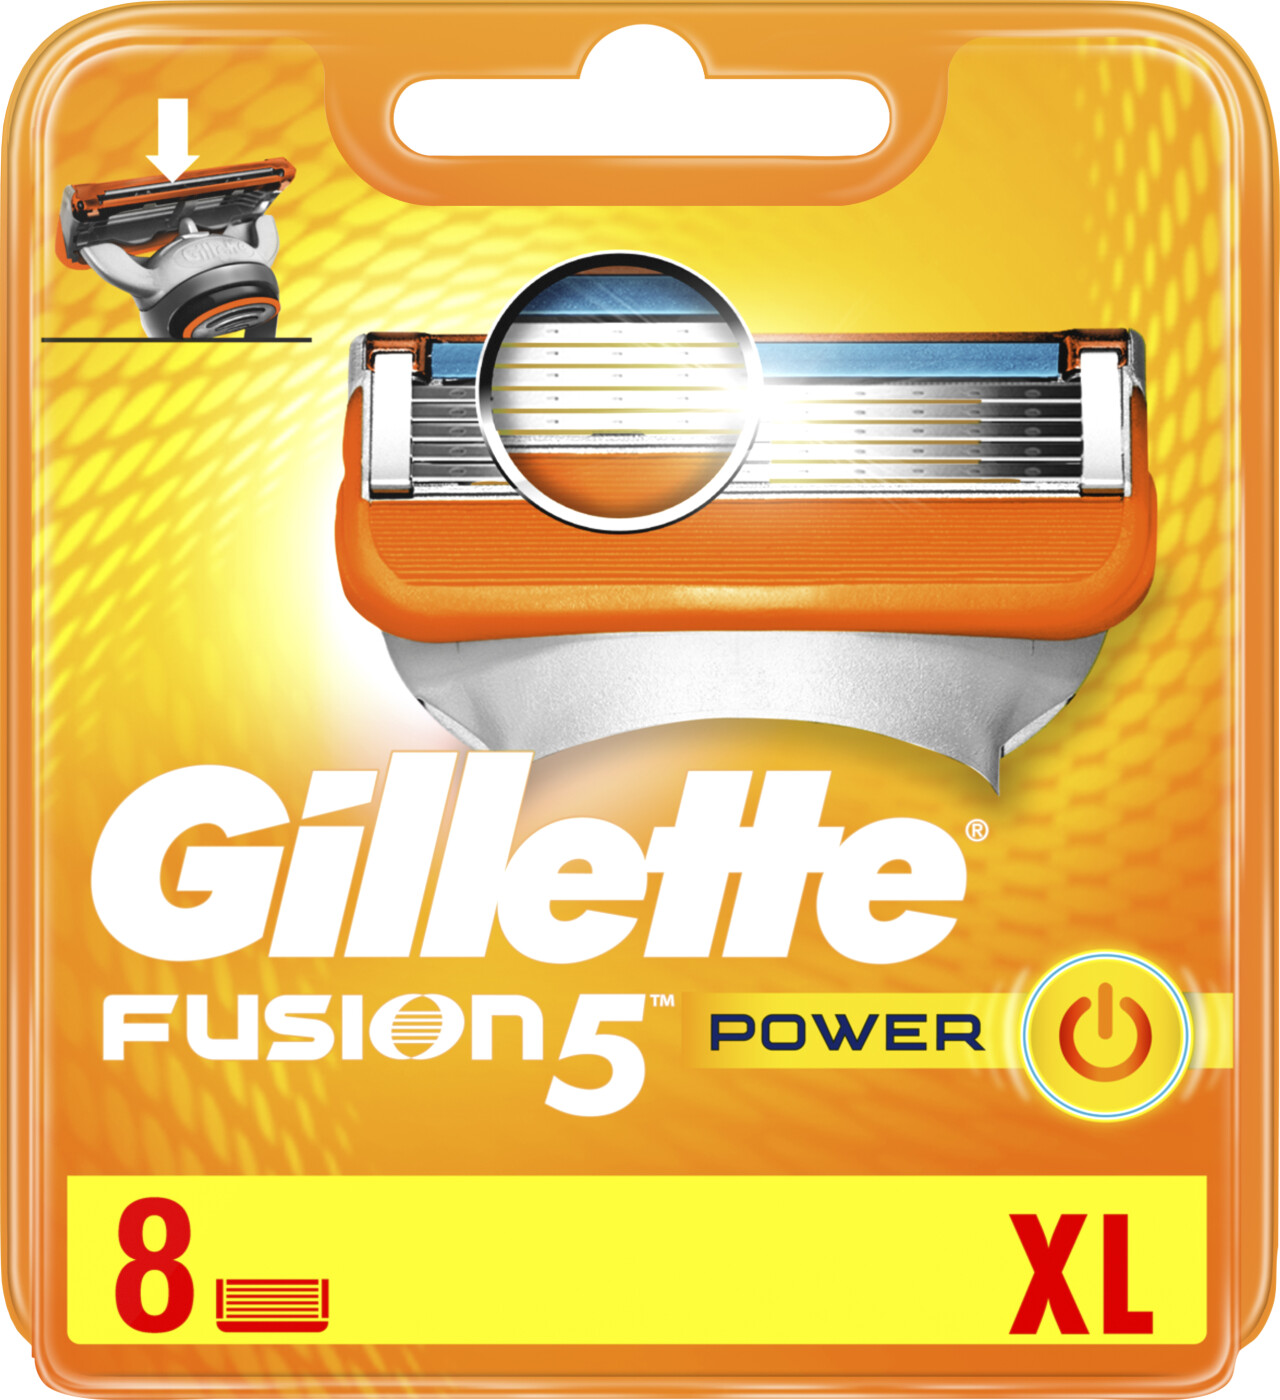 Se Gillette - Fusion 5 Power Barberblade Xl Pakke - 8-pak hos Gucca.dk